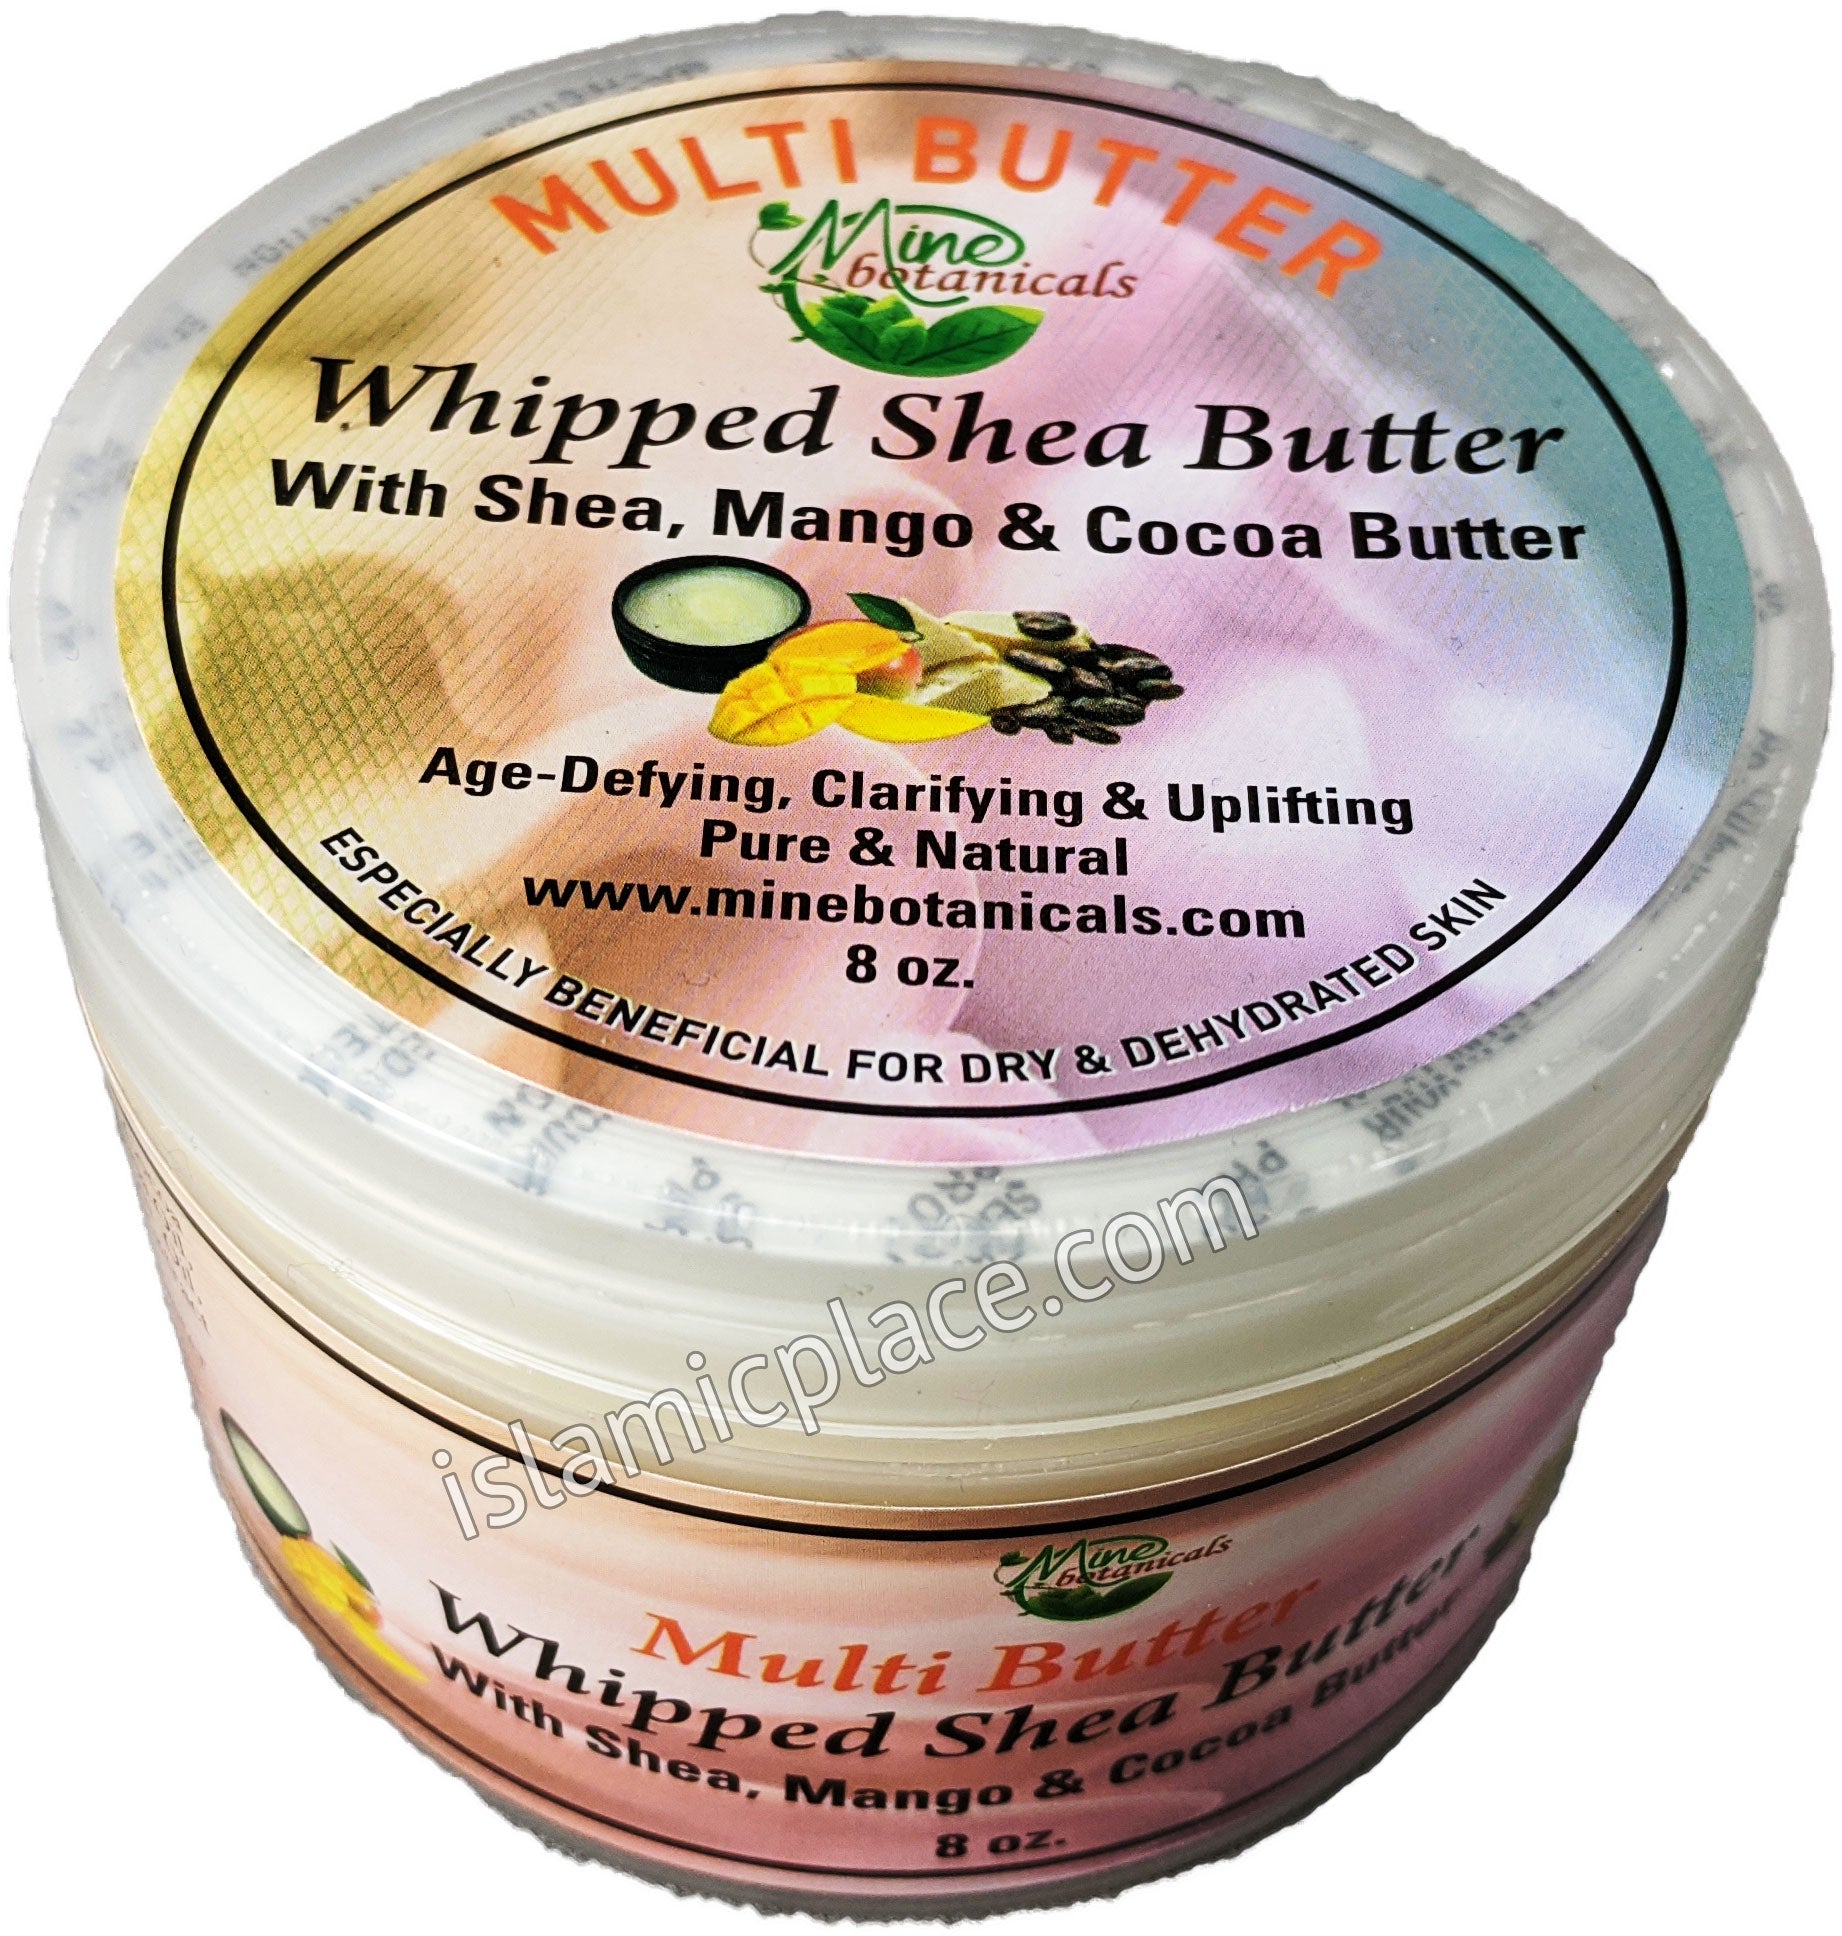 Multi Butter Whipped Shea Butter with Shea, Mango & Cocoa Butter